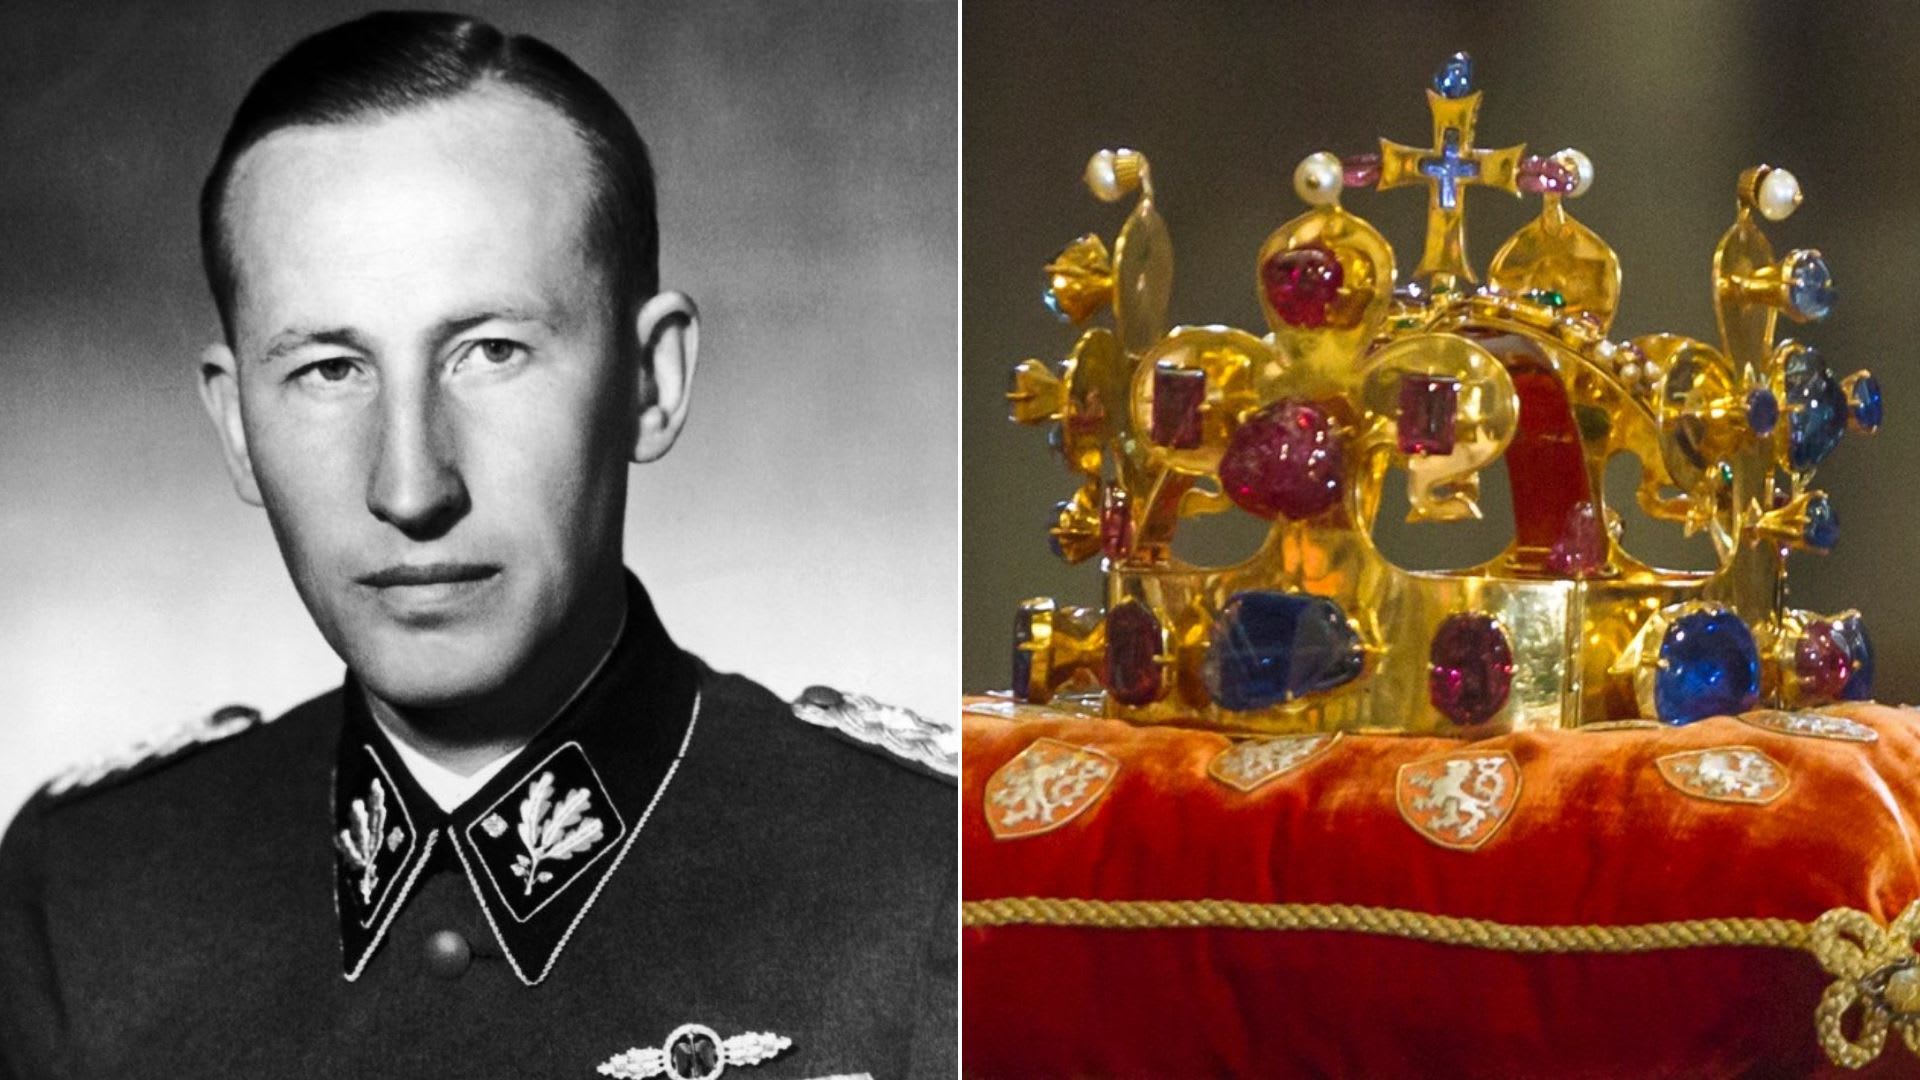 Rienhard Heydrich a Svatováclavská koruna